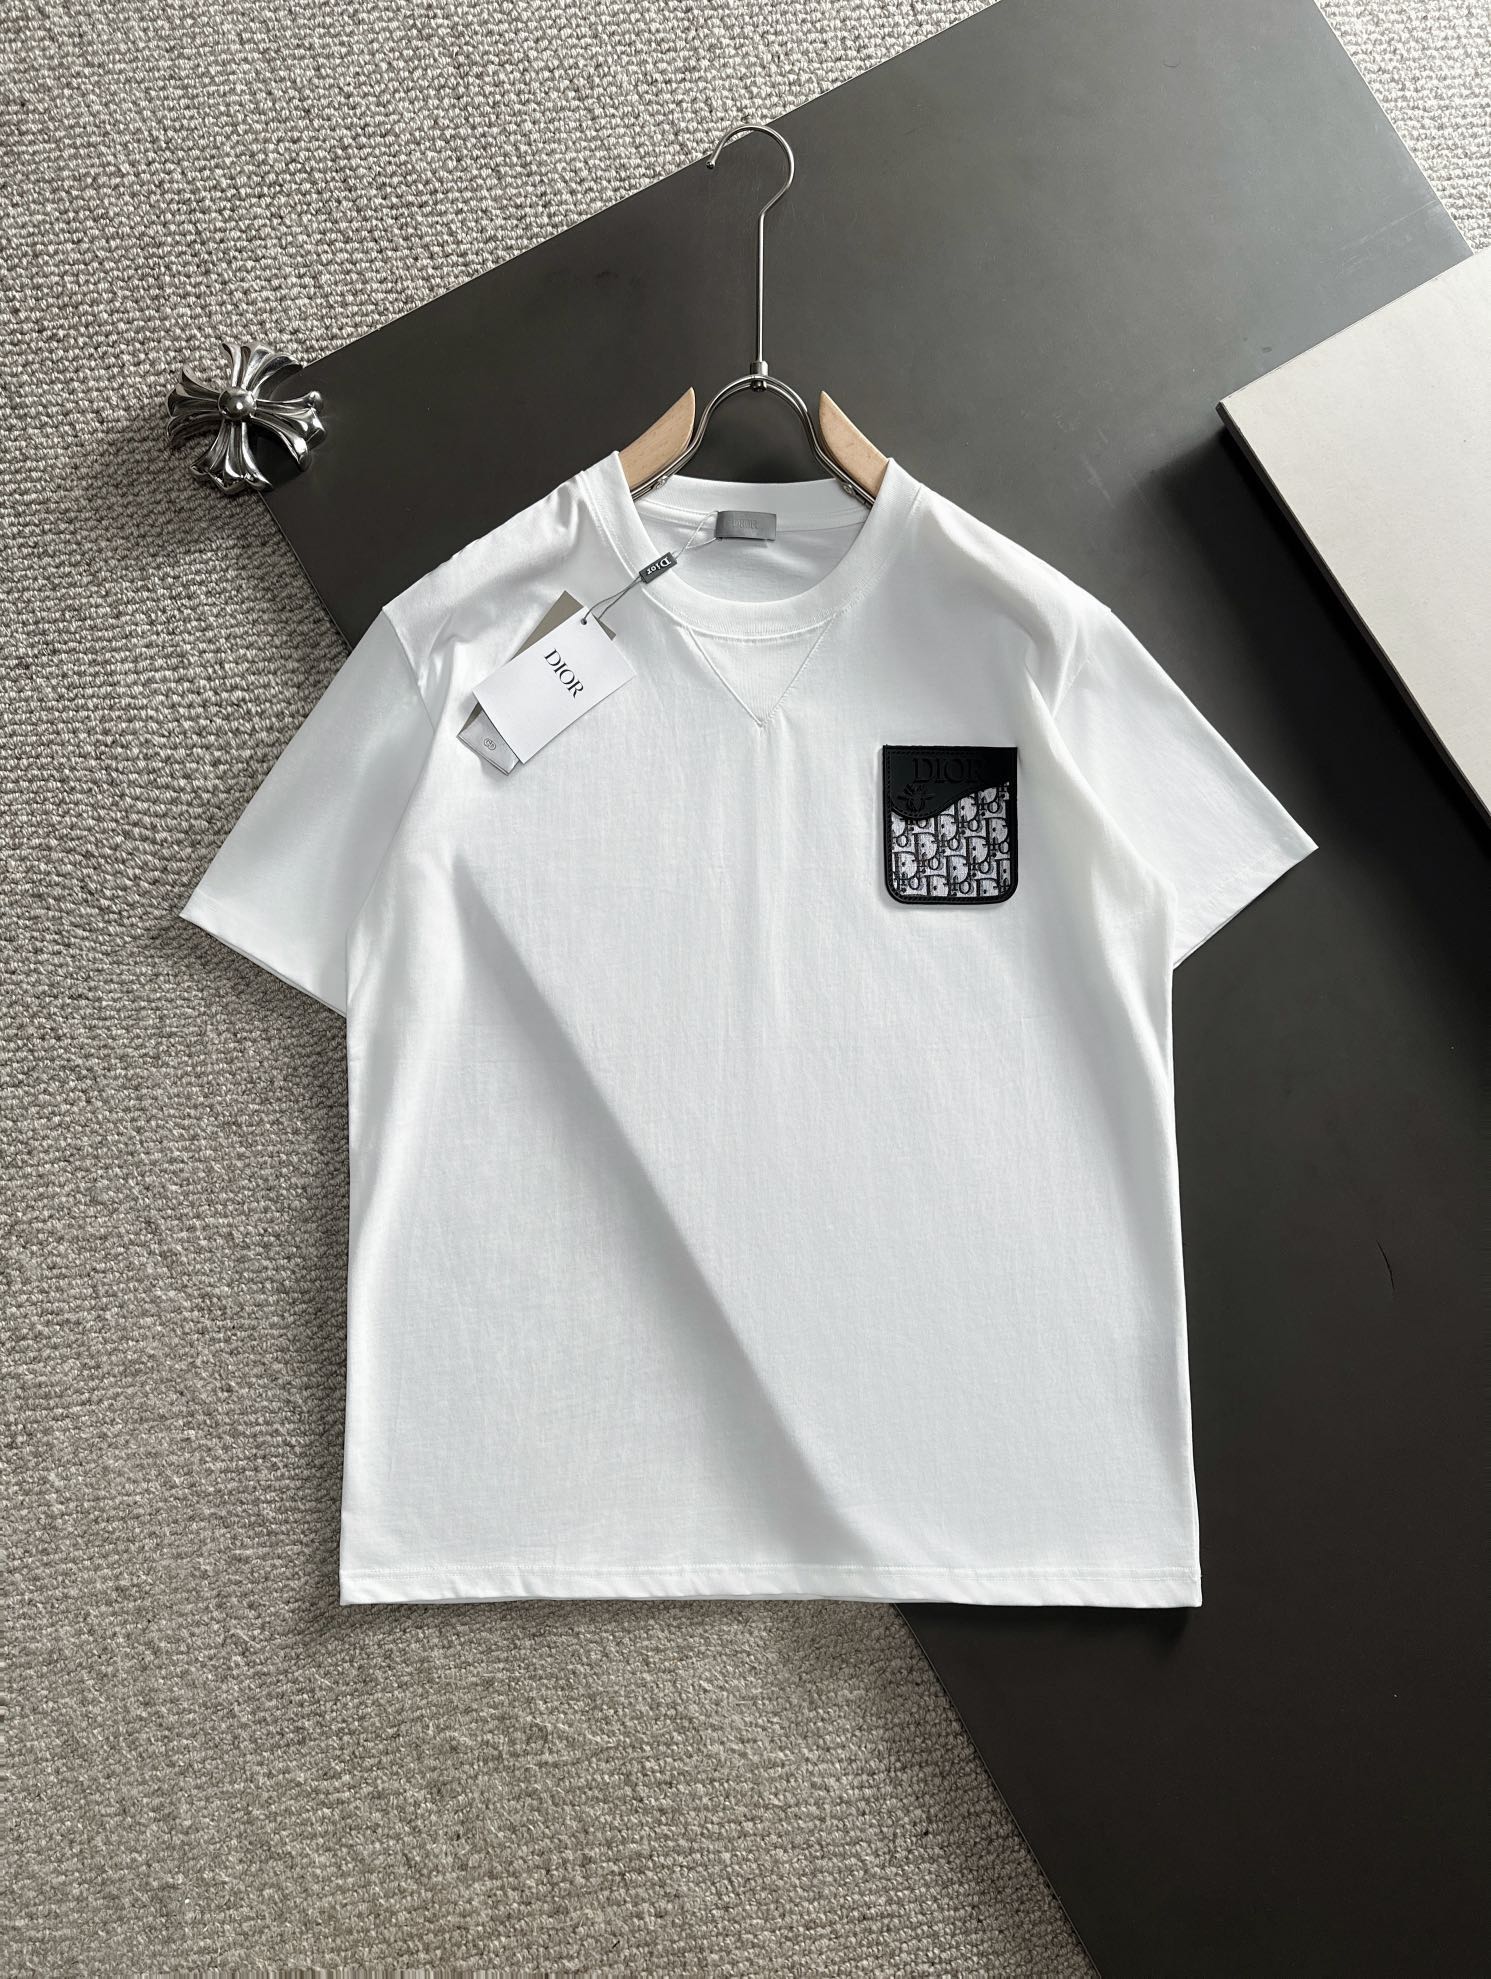 dior ステューシー tシャツスーパーコピー 短袖 爆買い品質保証 トップス 純綿 シンプル 春新販売 男女兼用 ホワイト_1